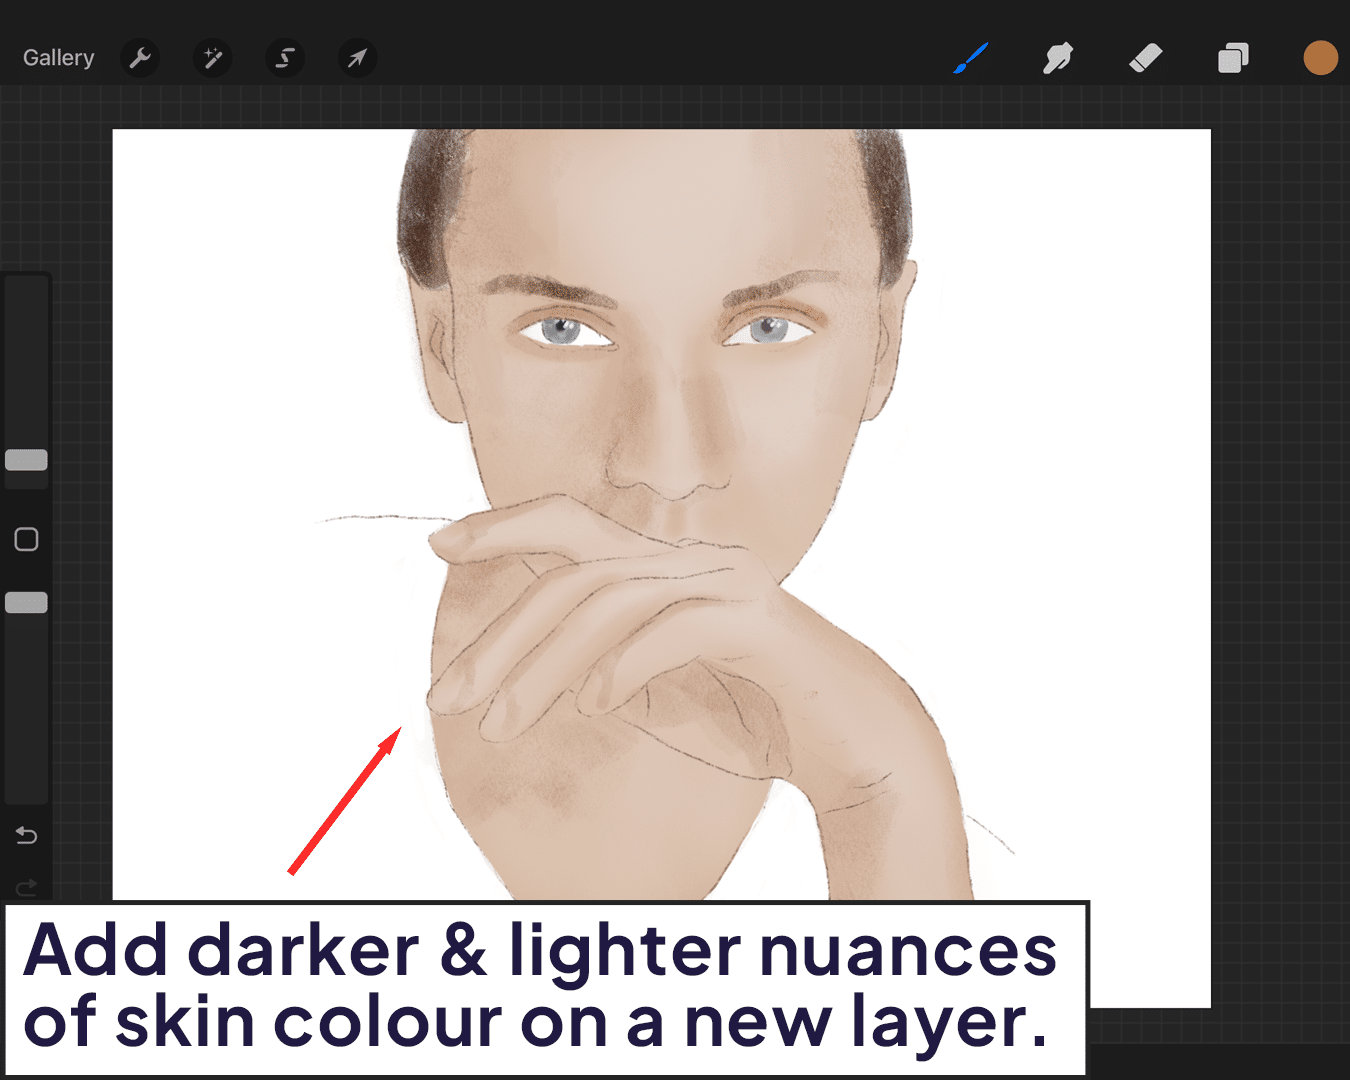 Adding darker & lighter nuances